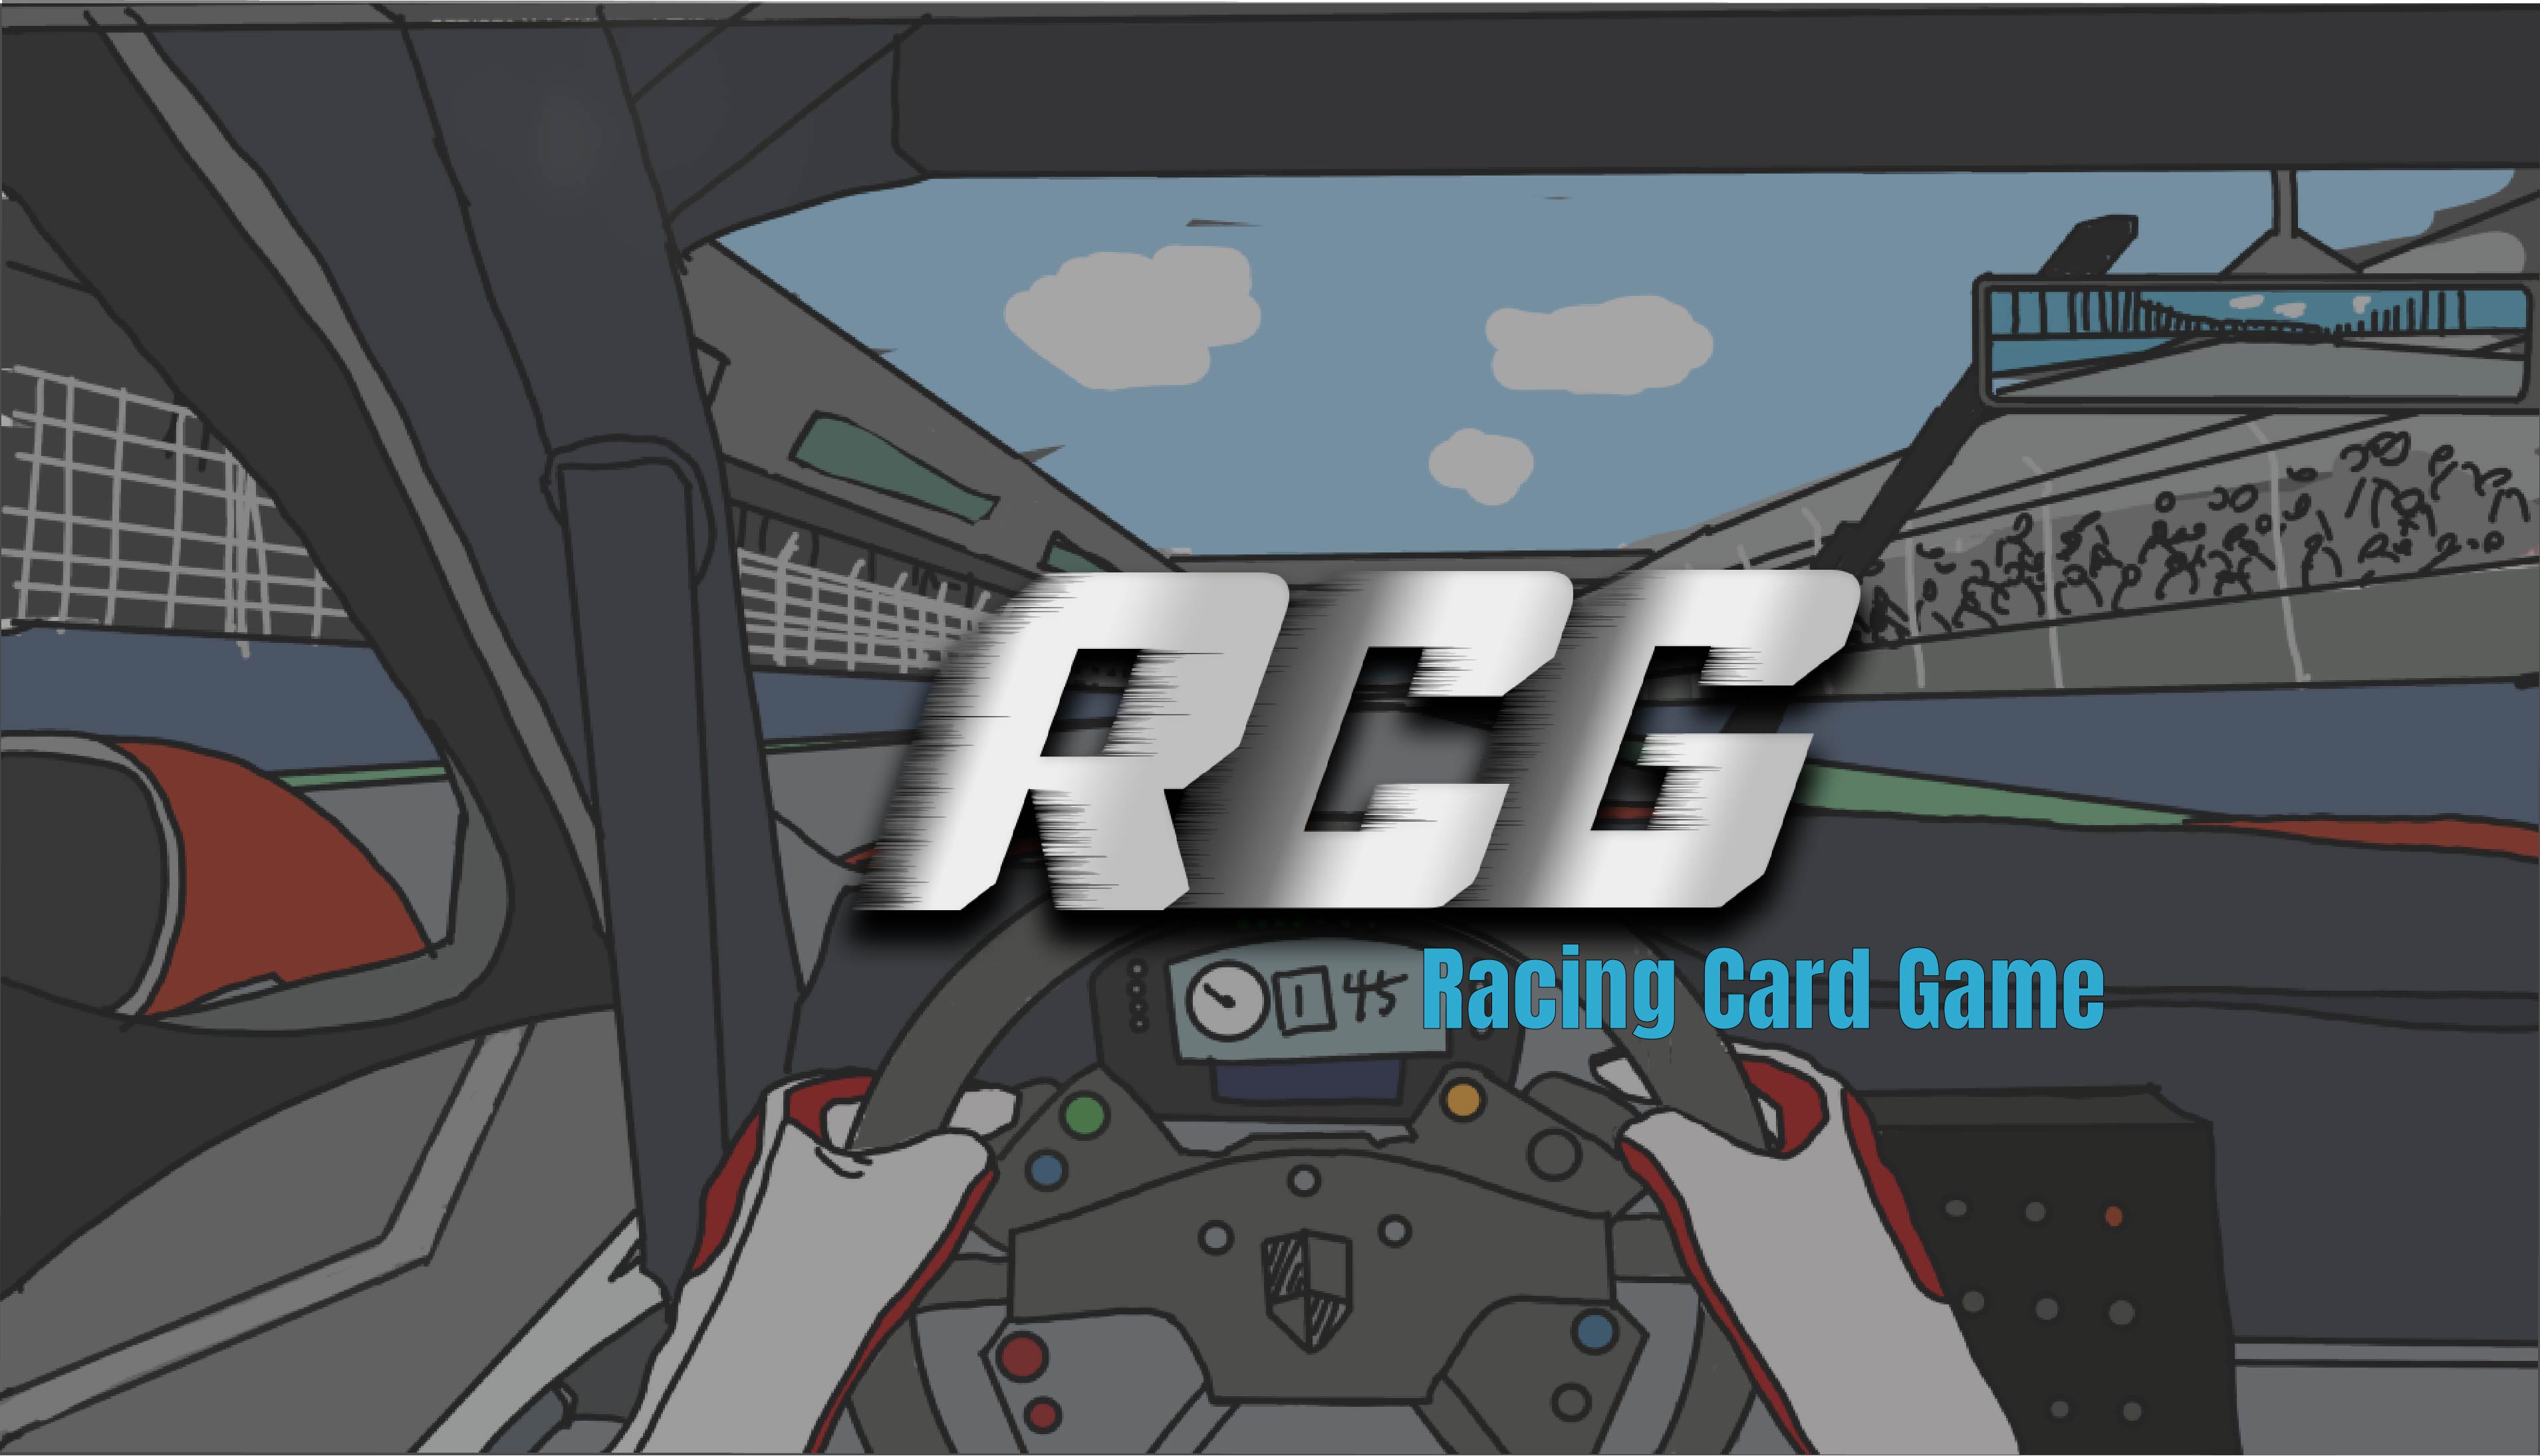 Racing card game